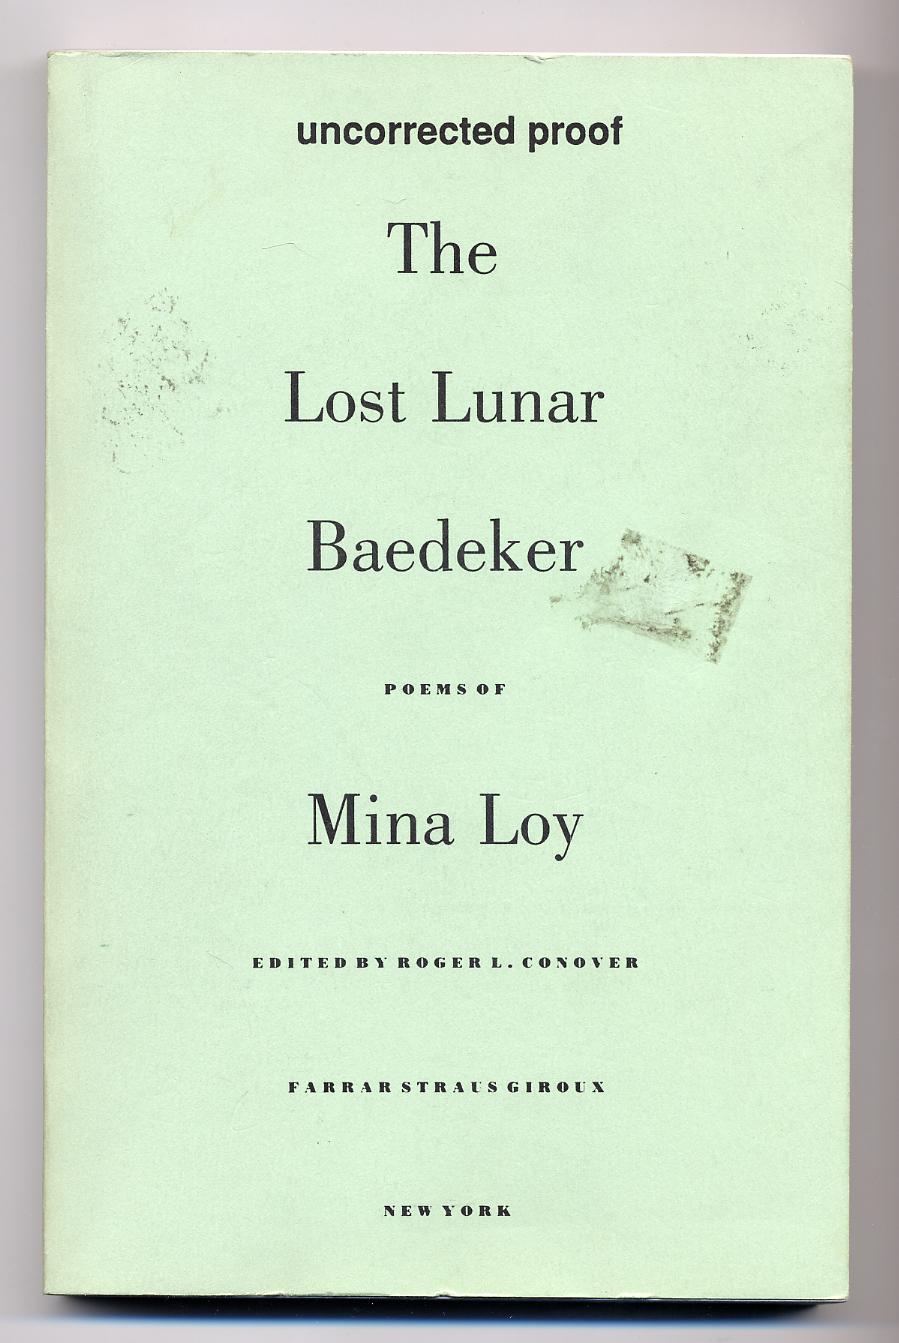 The Lost Lunar Baedeker - LOY, Mina